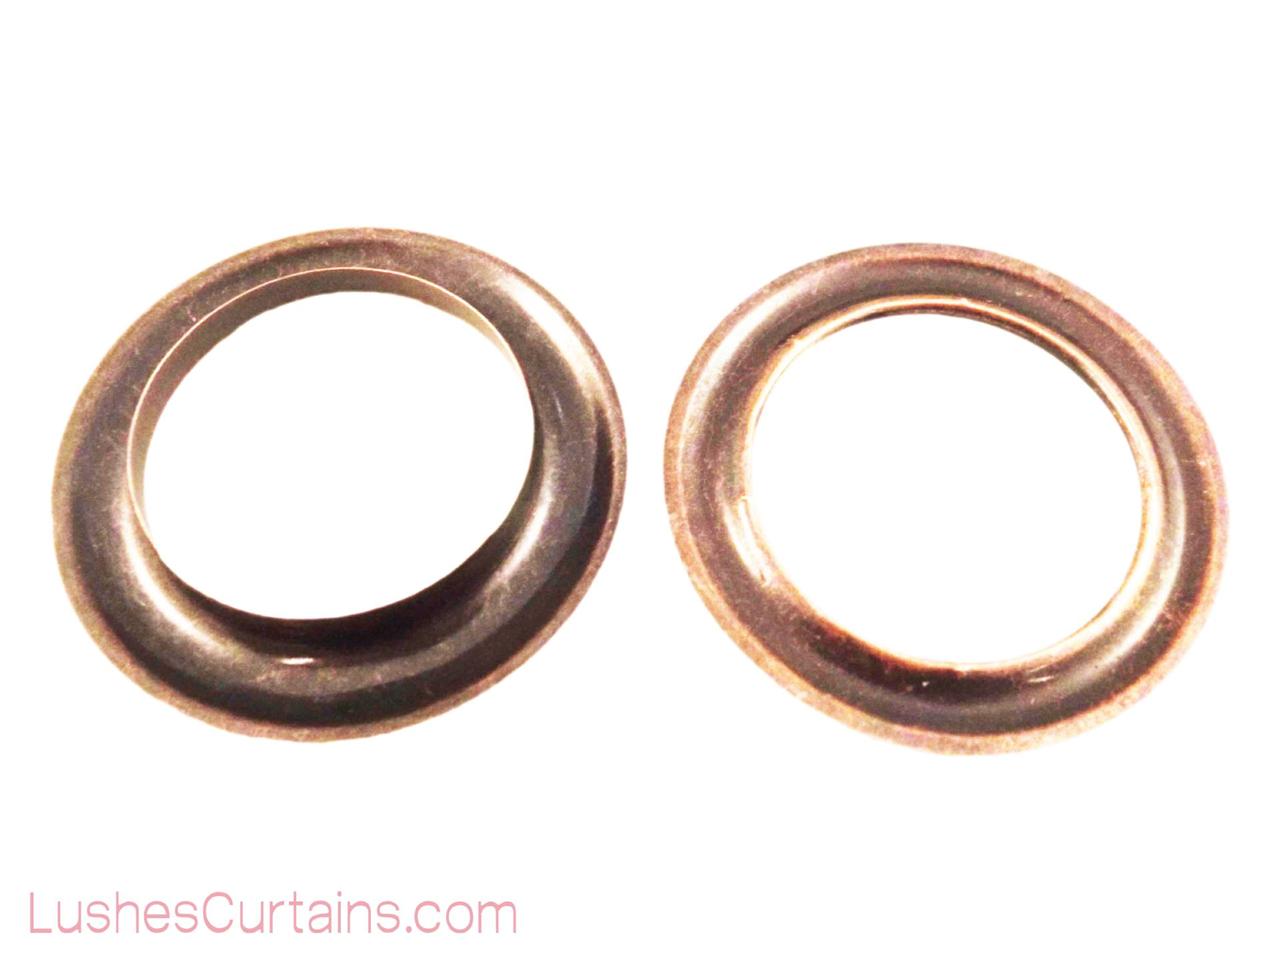 Curtain Drapery Copper Oxide Grommets Eyelet #12 Inner Diameter 1-9/16 Pack of 